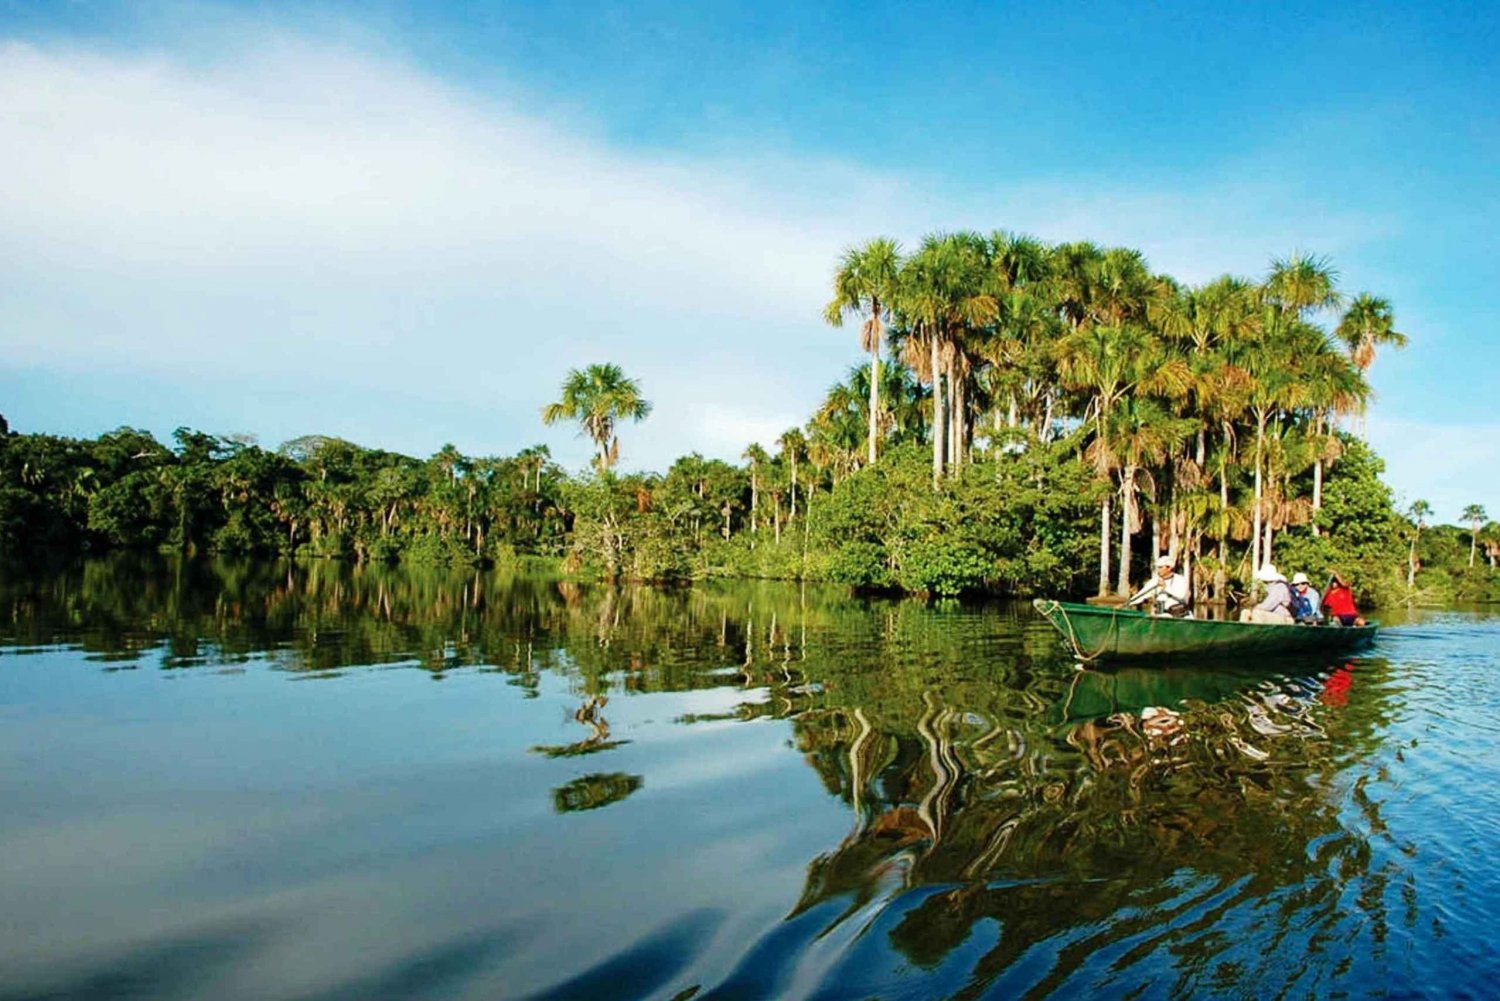 Monkey Island Amazon Adventure